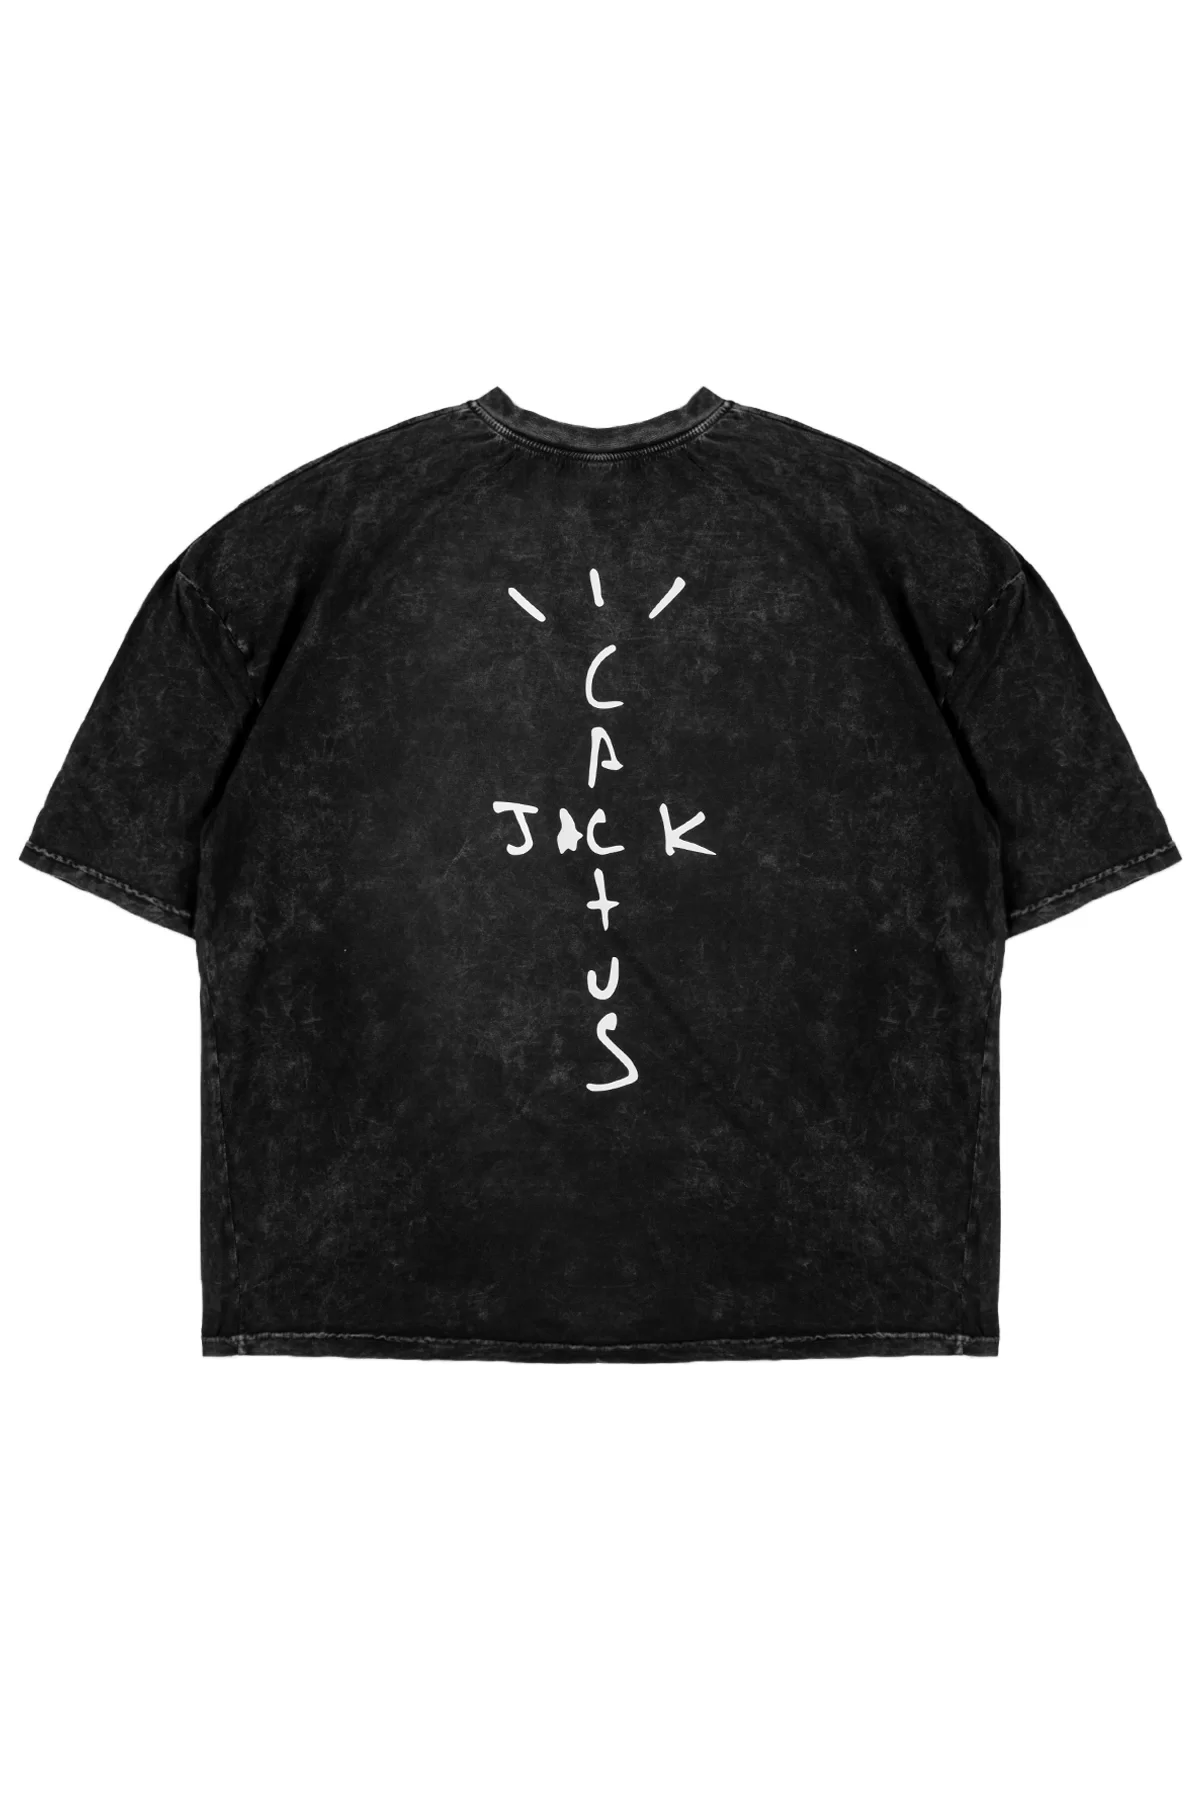 Cactus Jack Baskılı Yıkamalı Siyah Unisex Oversize Tshirt